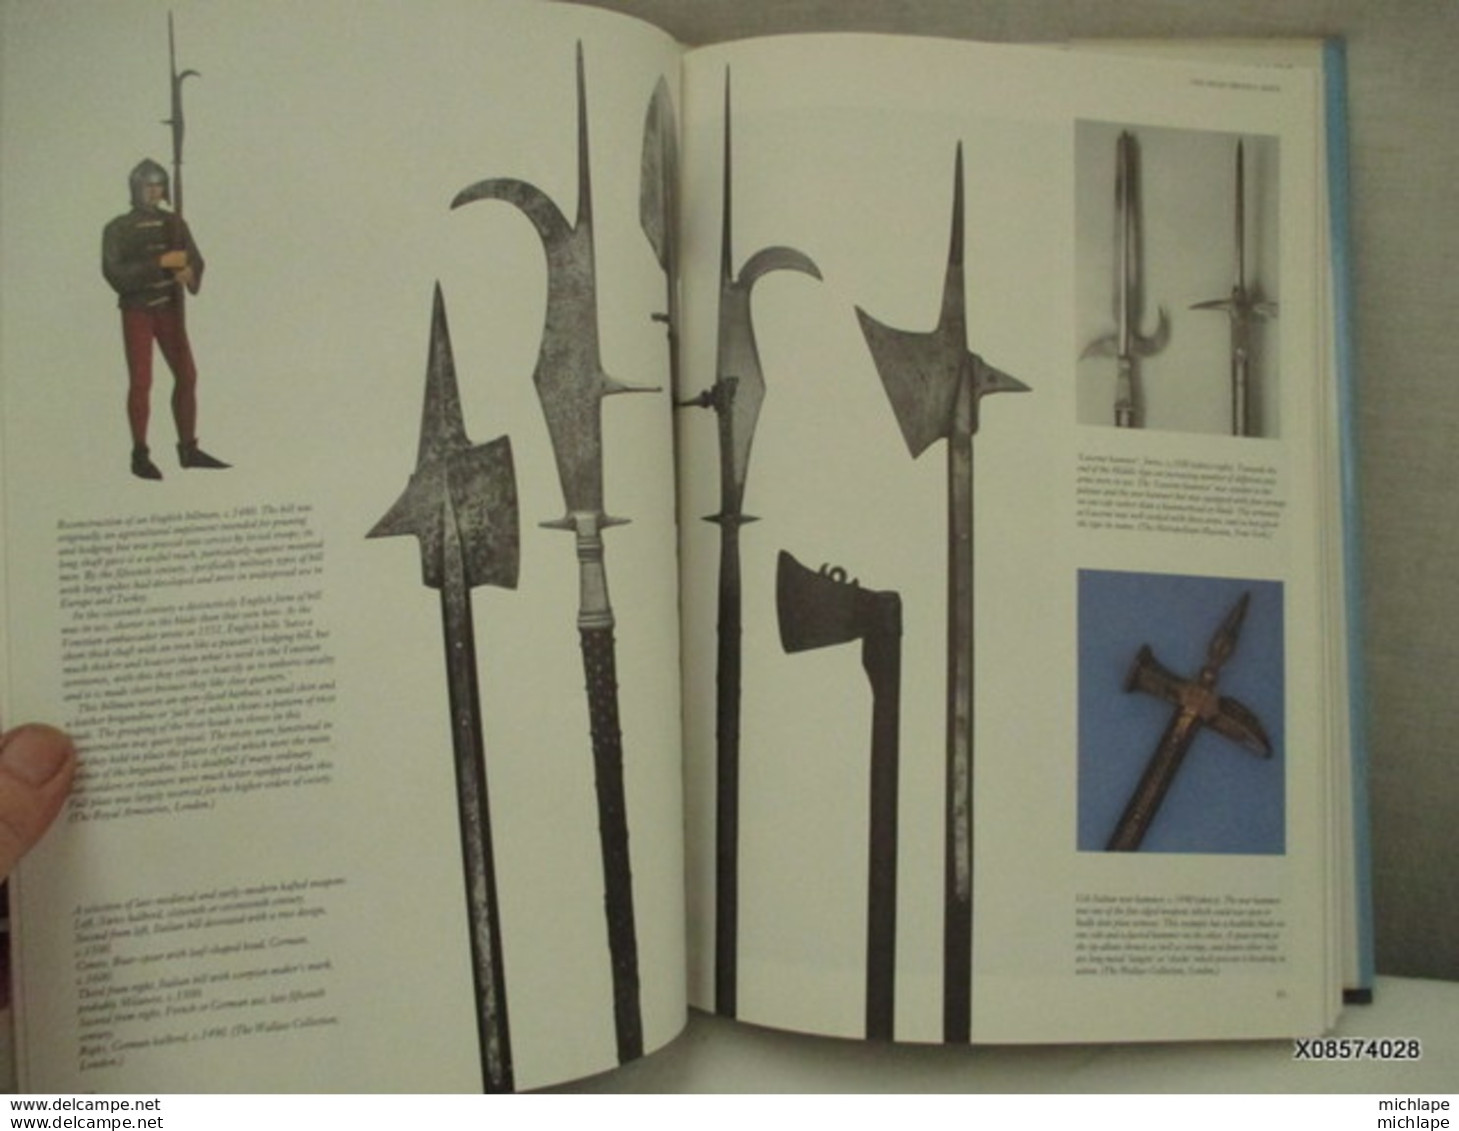 livre relié arms et armour format 24 cmX34 cm - 224 pages -1991- état neuf